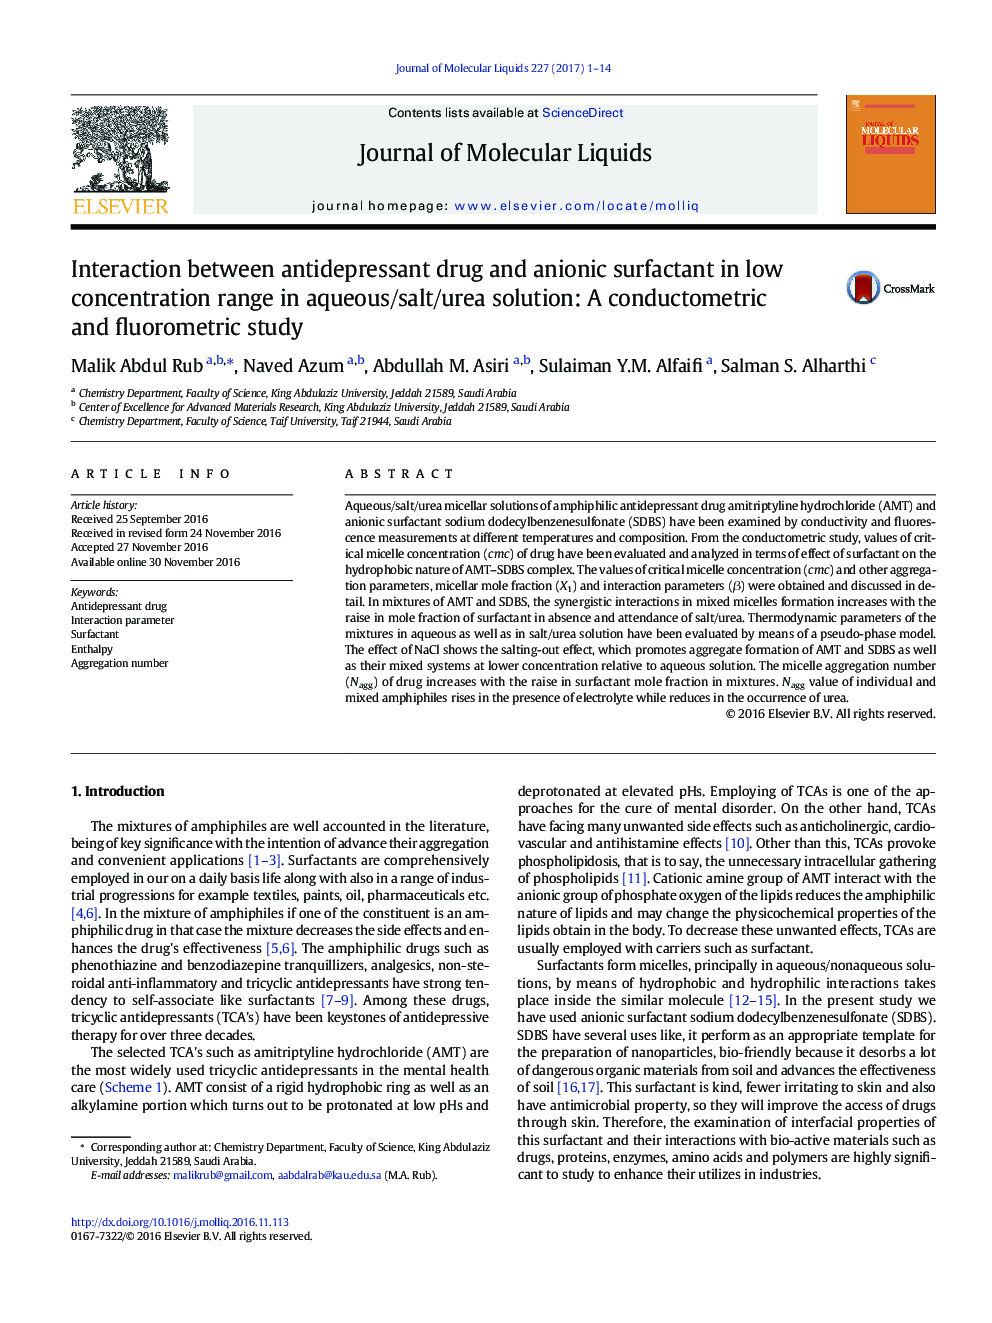 تعامل داروهای ضد افسردگی و سورفکتانت آنیونی در محدوده غلظت کم در محلول آبی / نمک / اوره: مطالعه ی سنجش و فلورومتری 